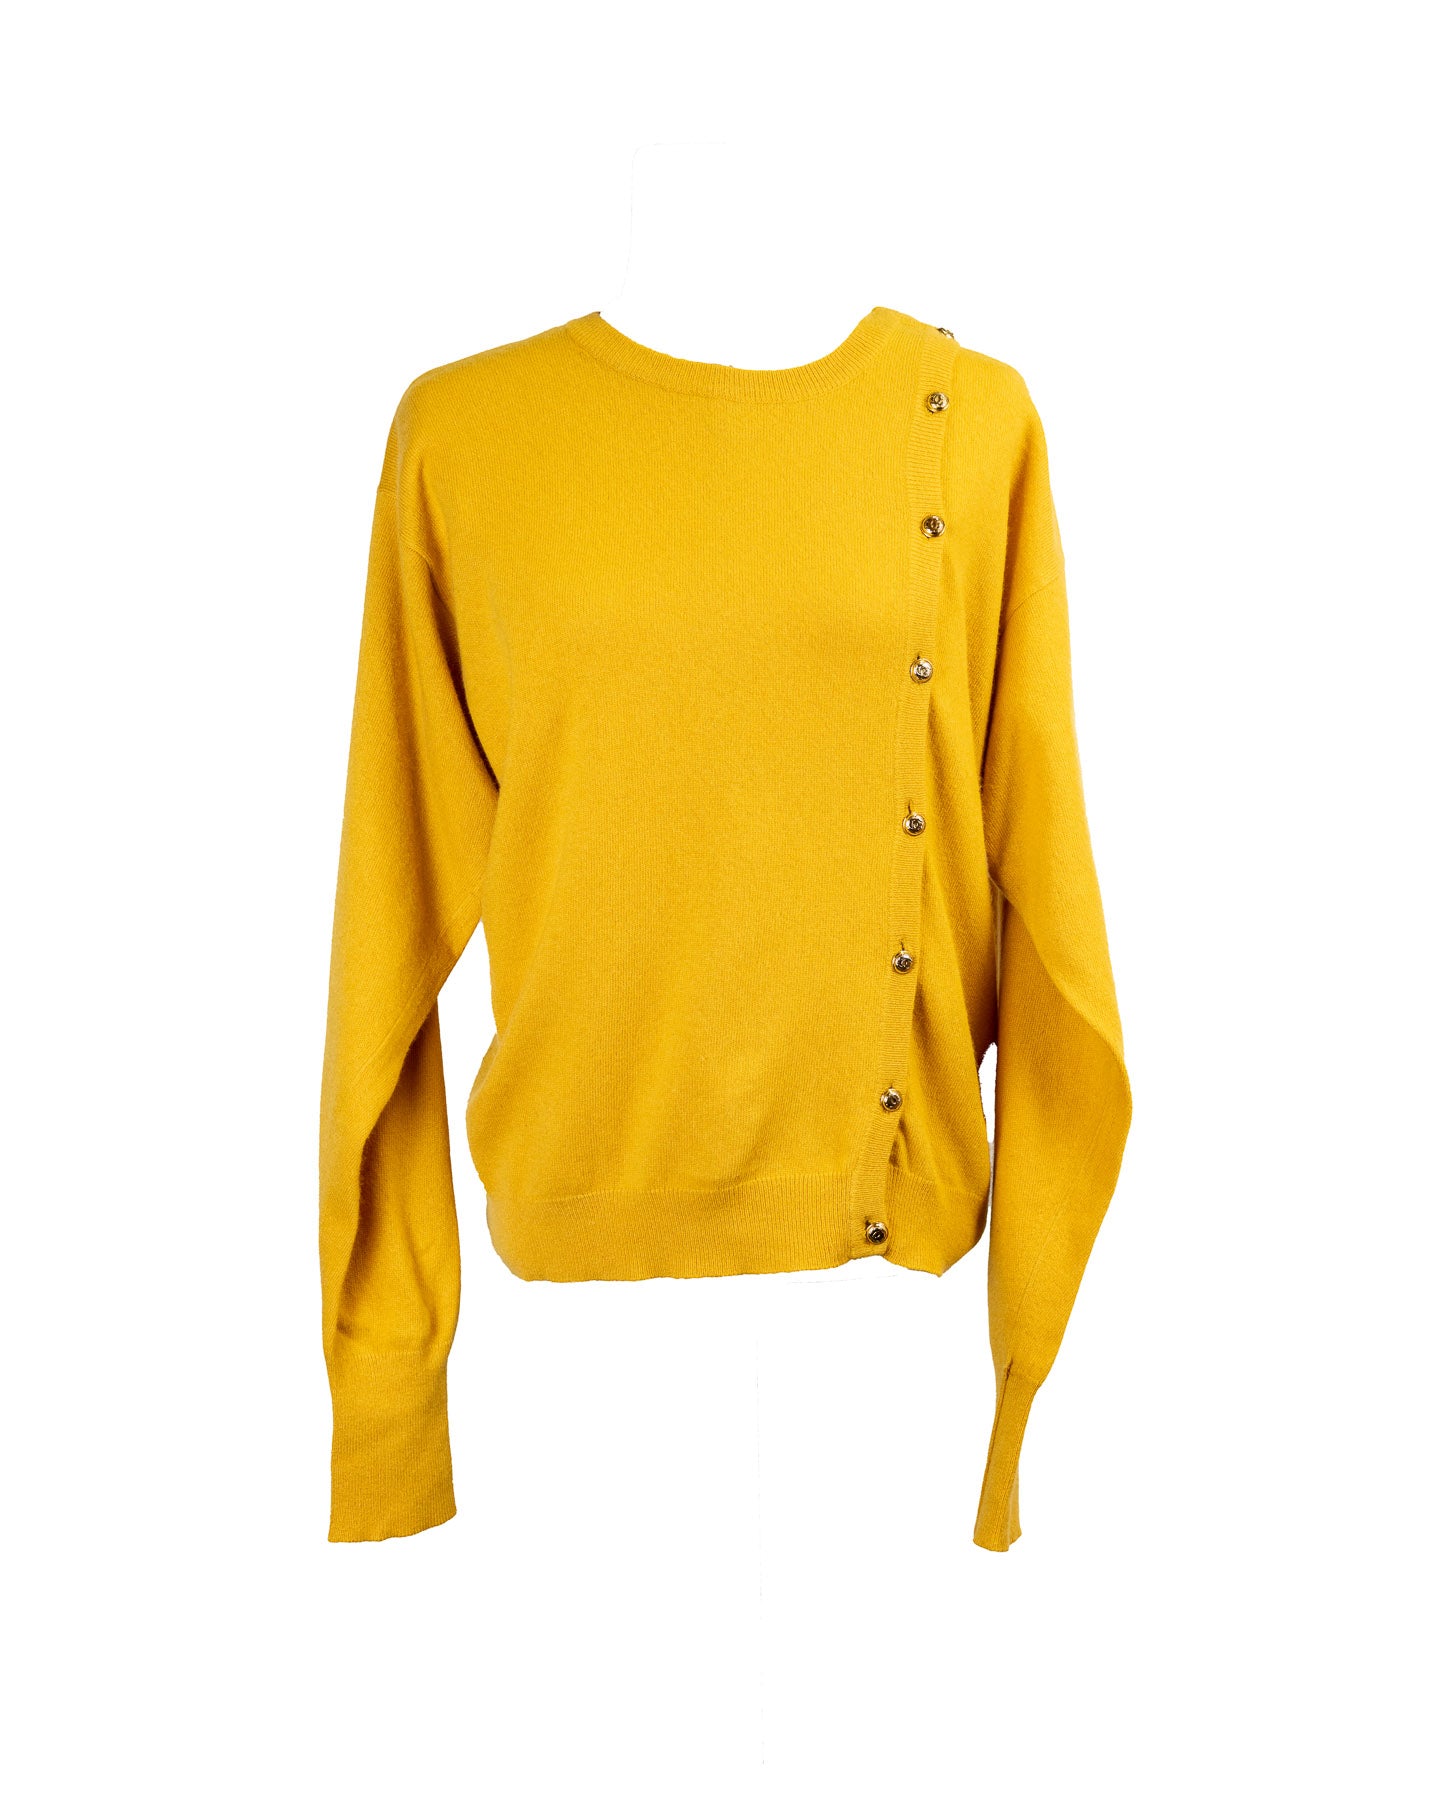 Suéter vintage amarelo Chanel com botões dourados 